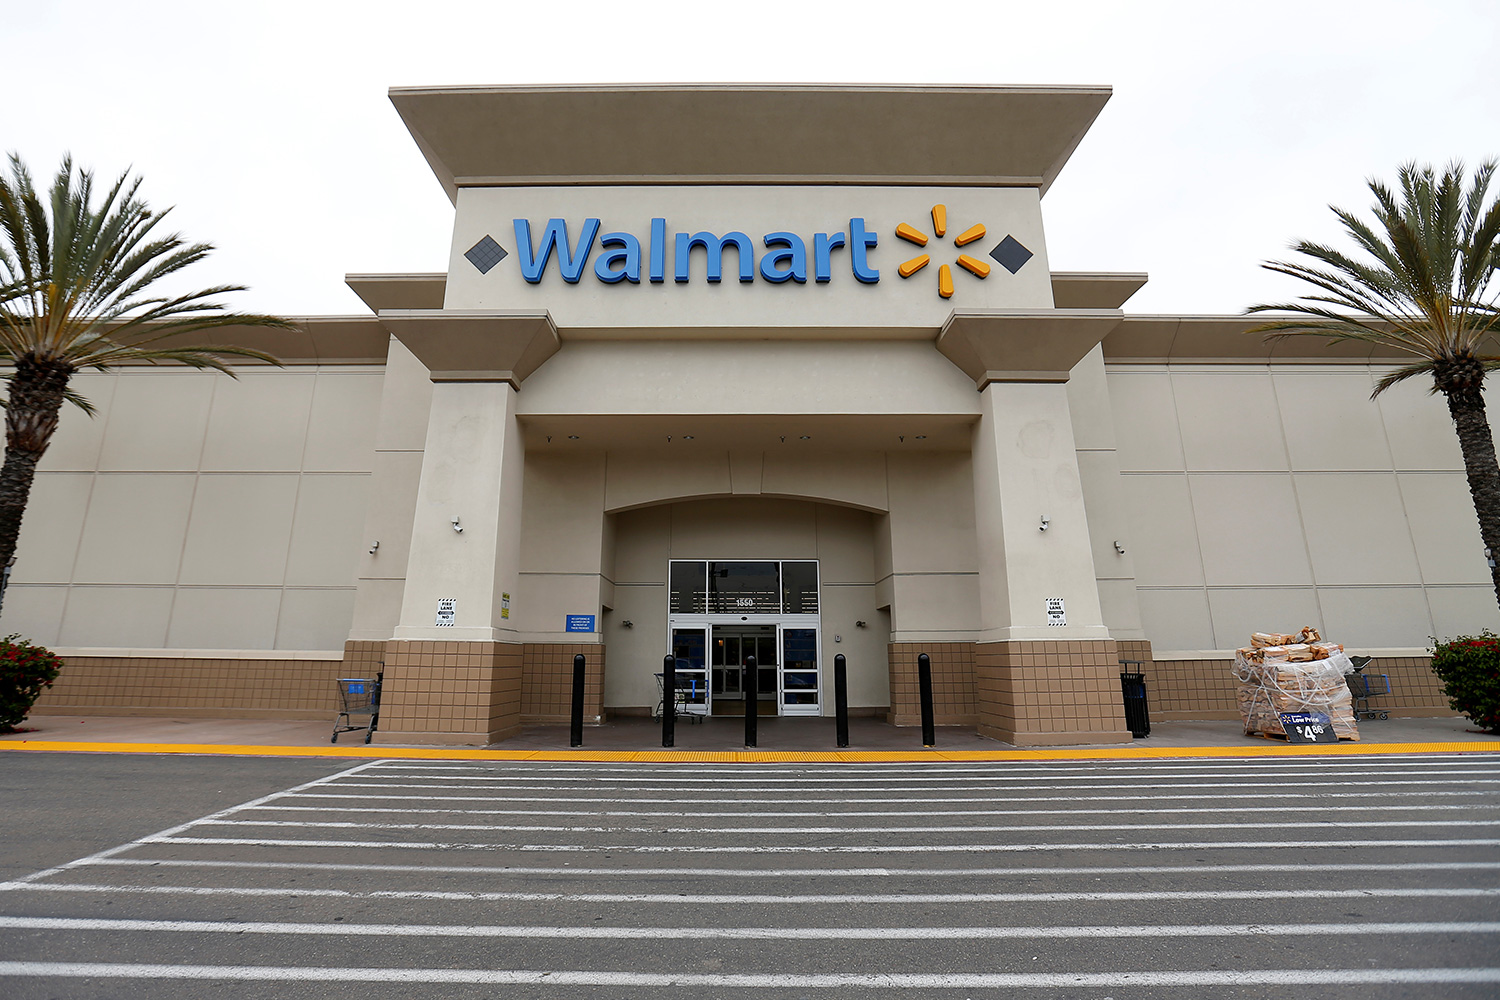 Nuevo tiroteo en un Walmart de Texas sacude a Estados Unidos